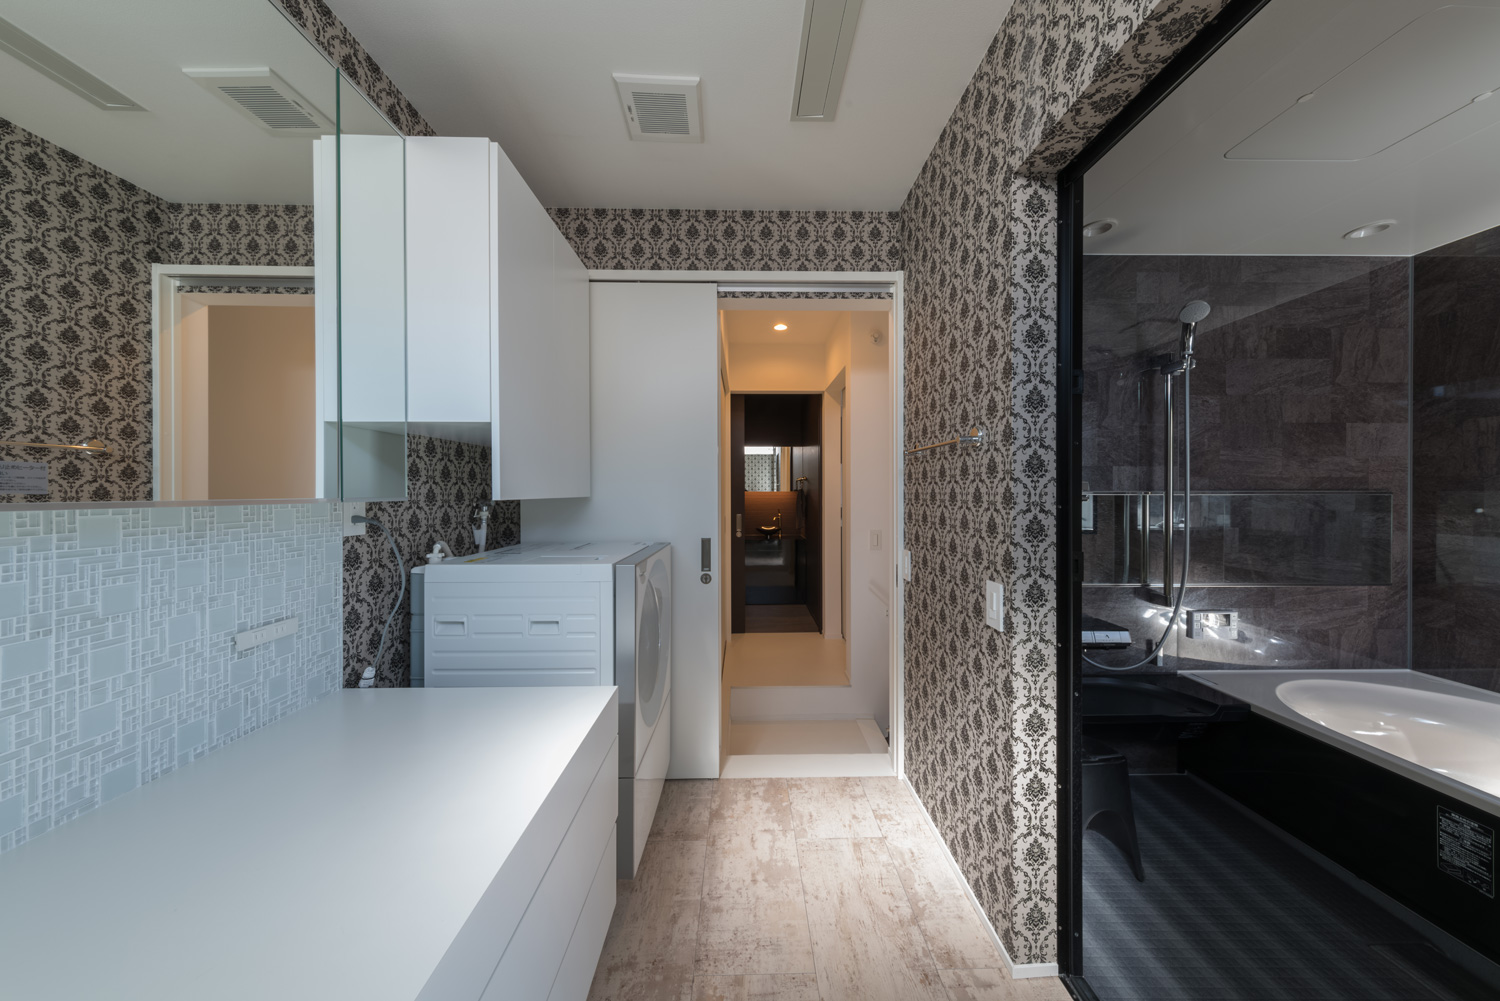 浴室とダマスク柄の壁紙の洗面所が隣接した空間・デザイン住宅